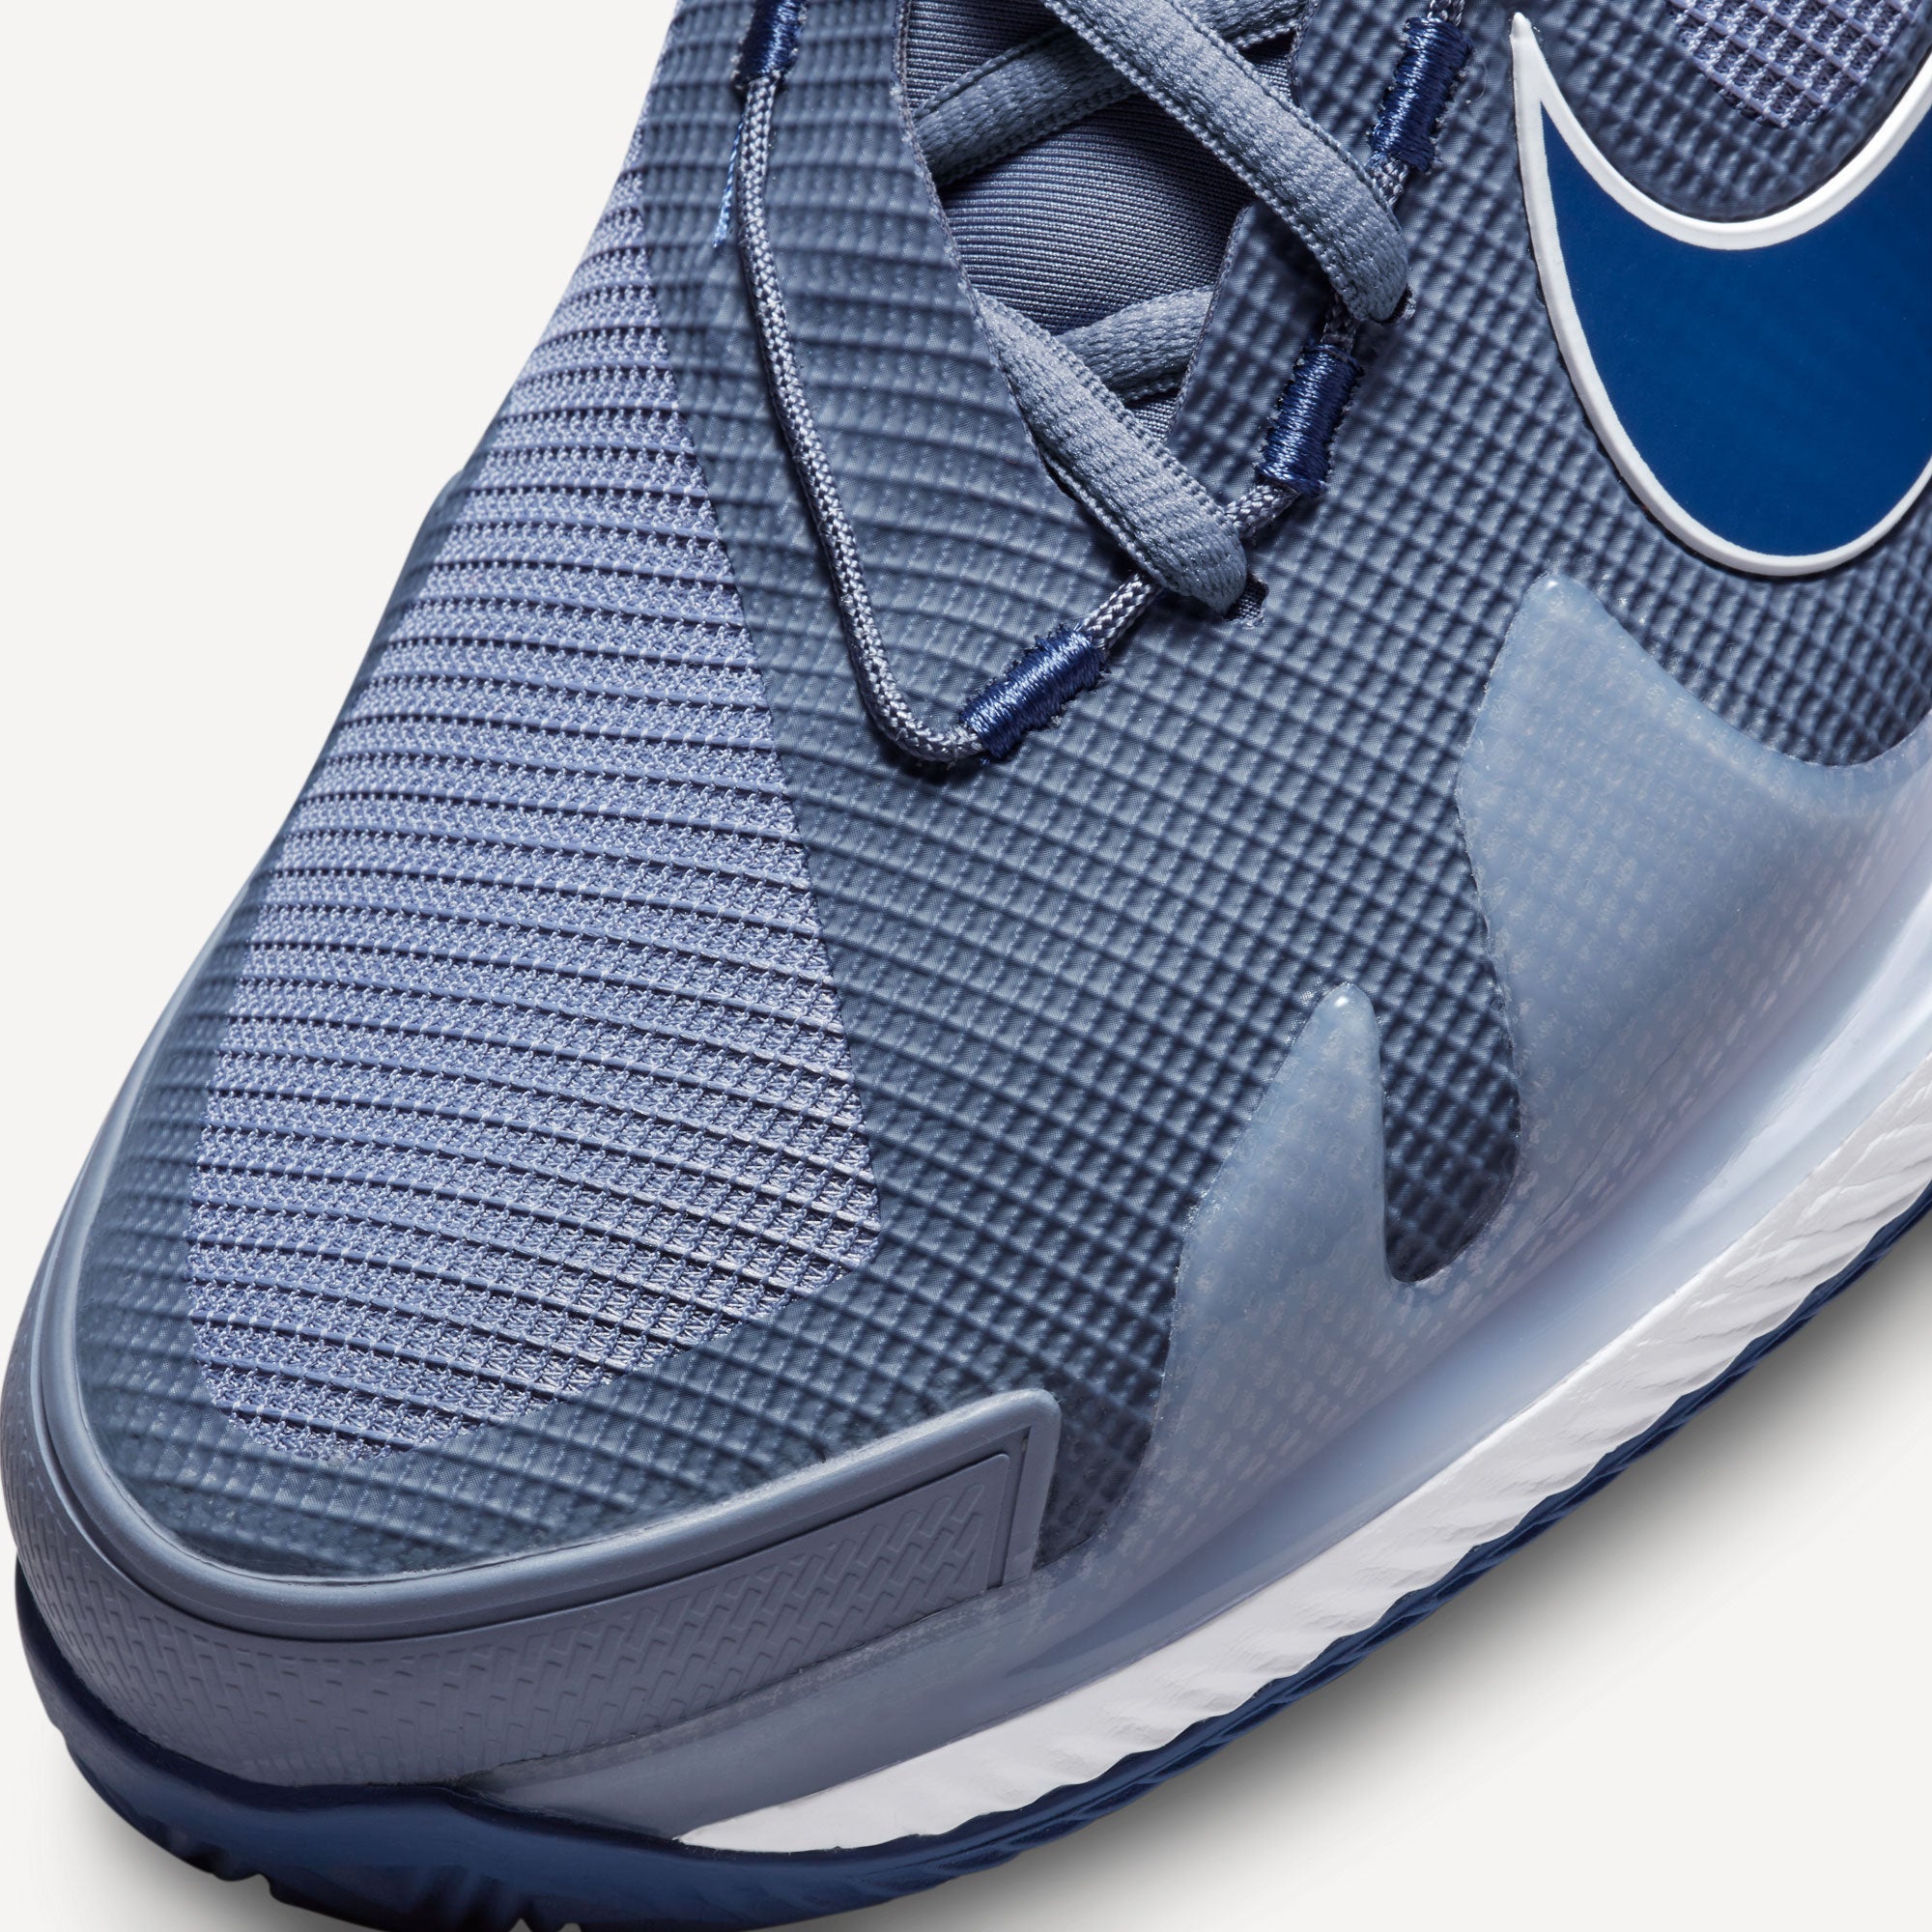 NikeCourt Air Zoom Vapor Pro Men's Clay Court Tennis Shoes Blue (7)